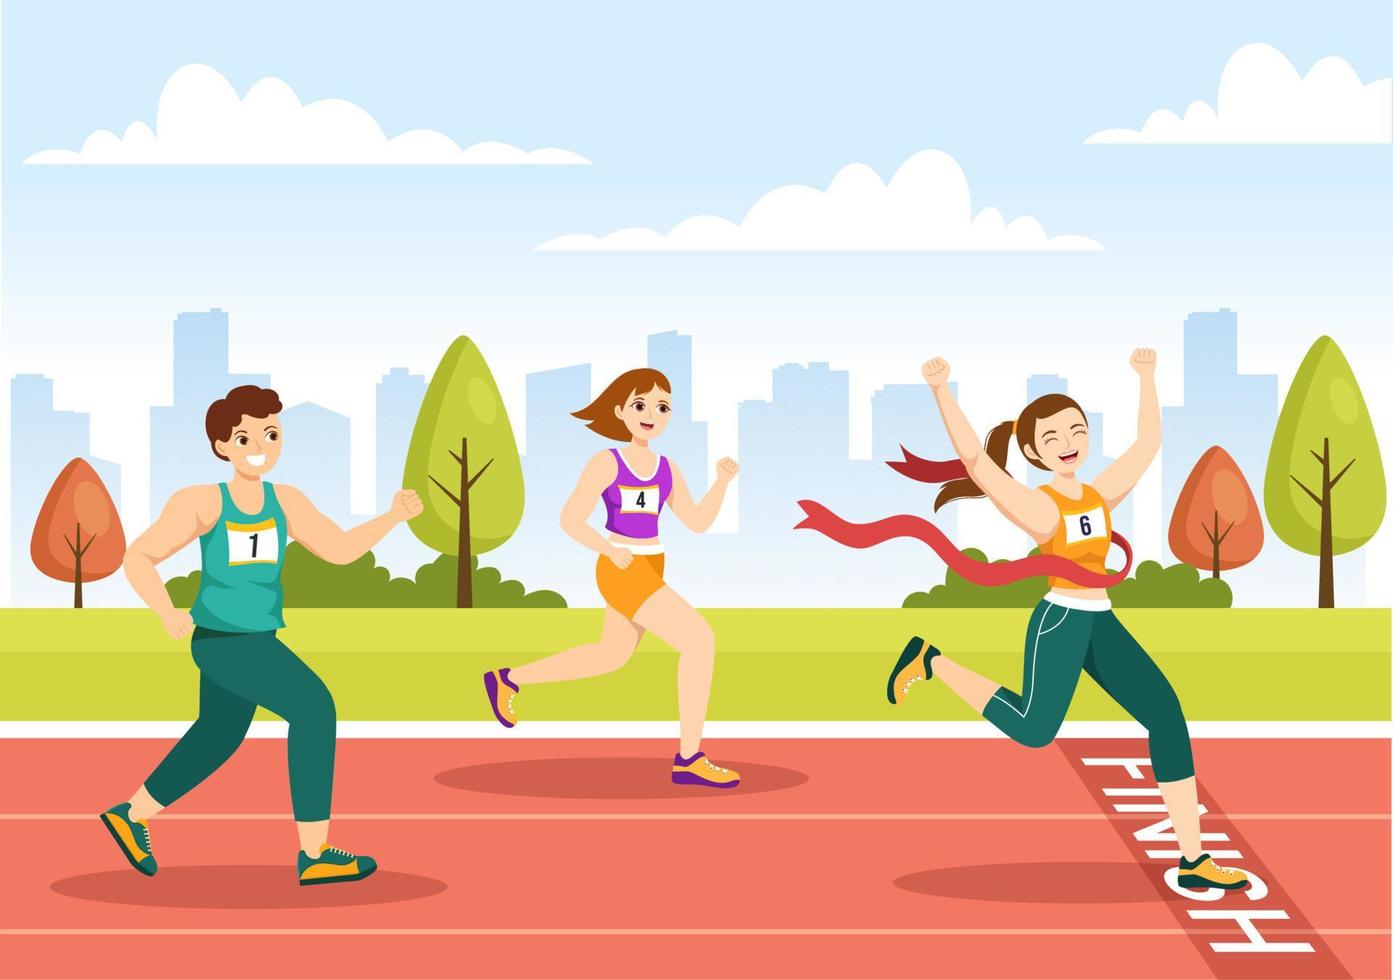 ilustração de corrida de maratona com pessoas correndo, torneio esportivo de jogging e corrida para alcançar a linha de chegada em modelo desenhado à mão de desenho animado plano vetor